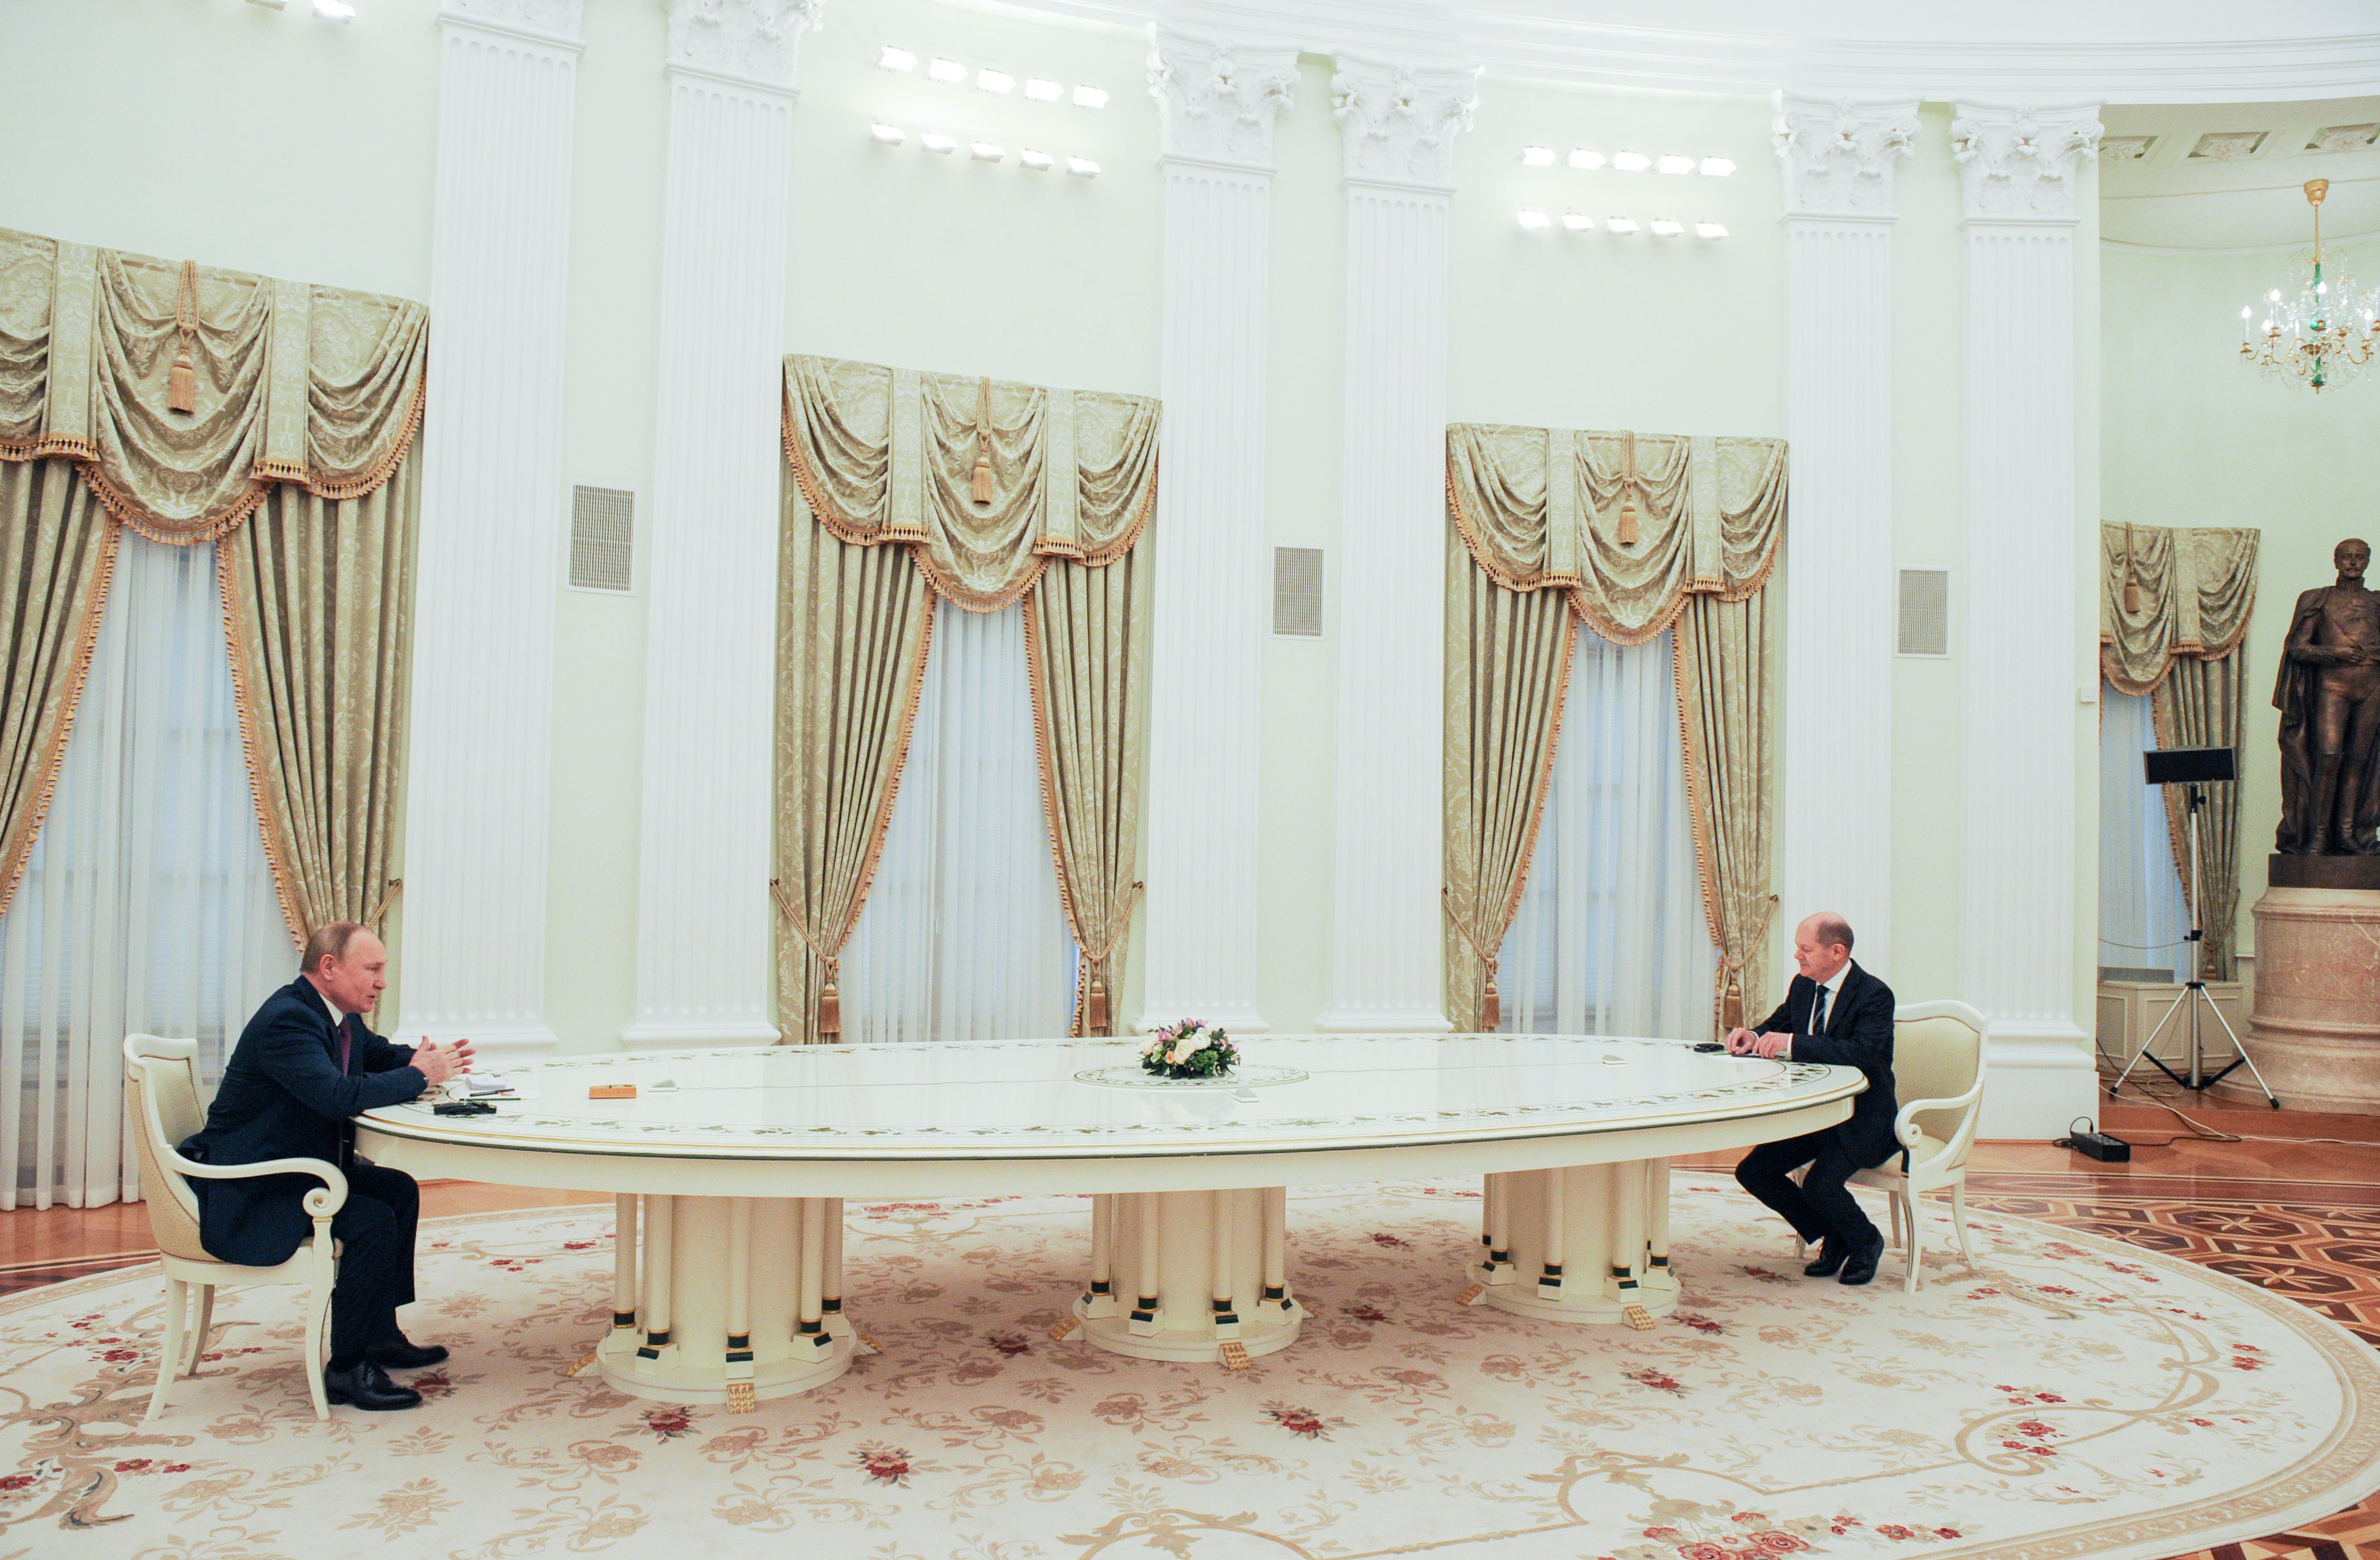 Vladimir Putin and y el Canciller de Alemania, Olaf Scholz, se reunieron en el Kremlin el martes